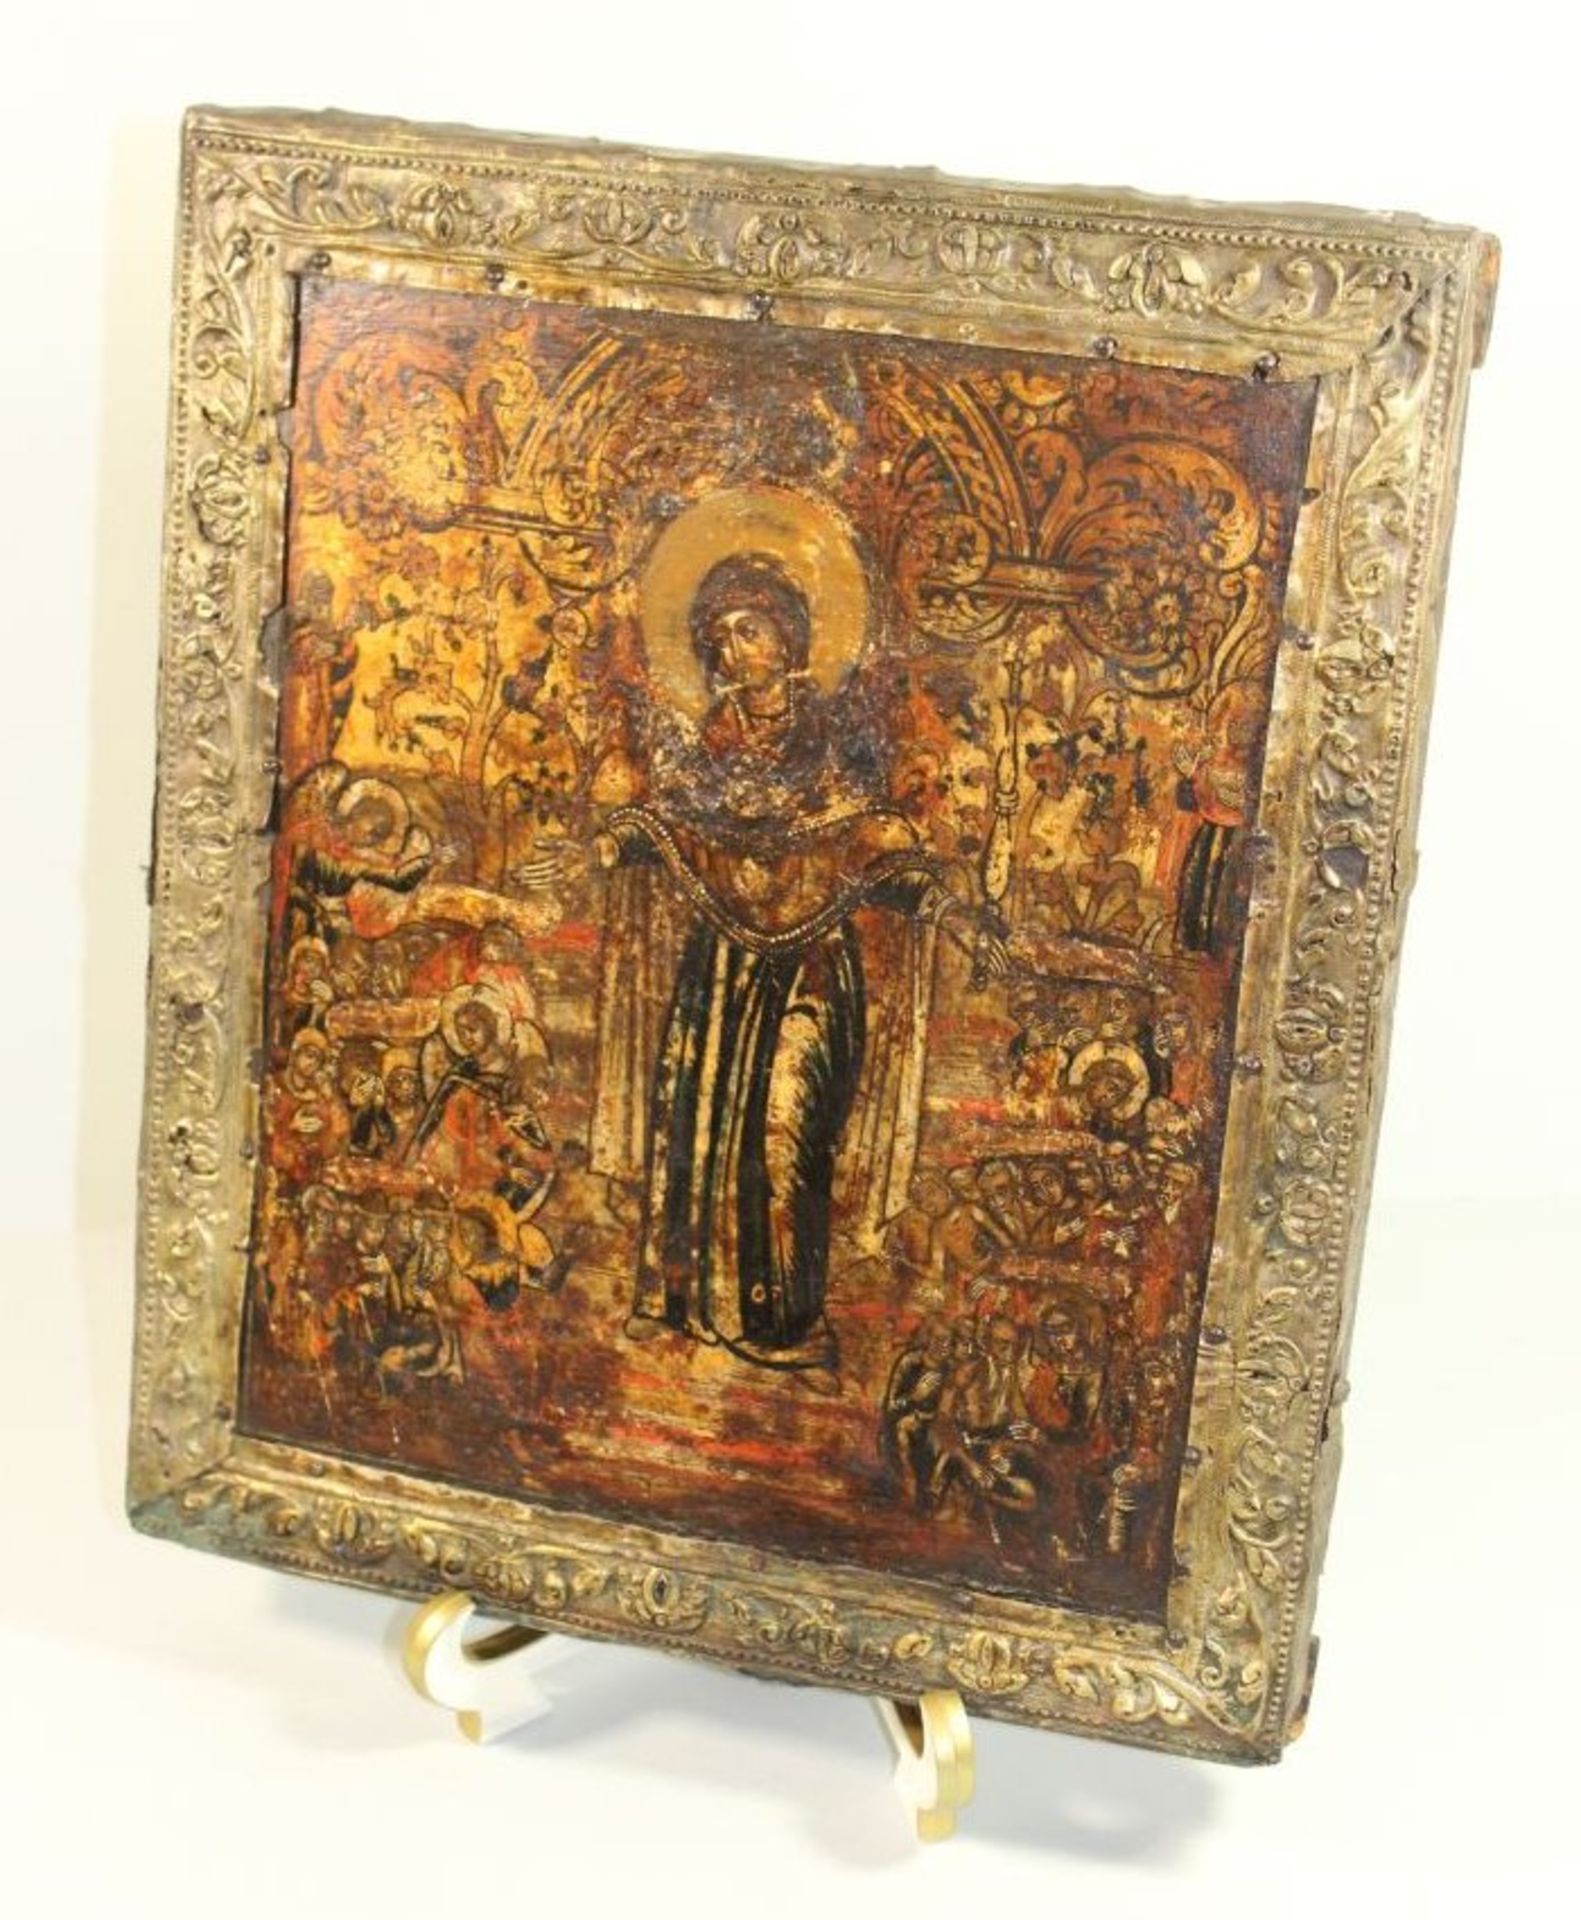 russische Ikone "Muttergottes von der Passion", 18. Jhd., 31 x 26cm, verso Beschreibung.